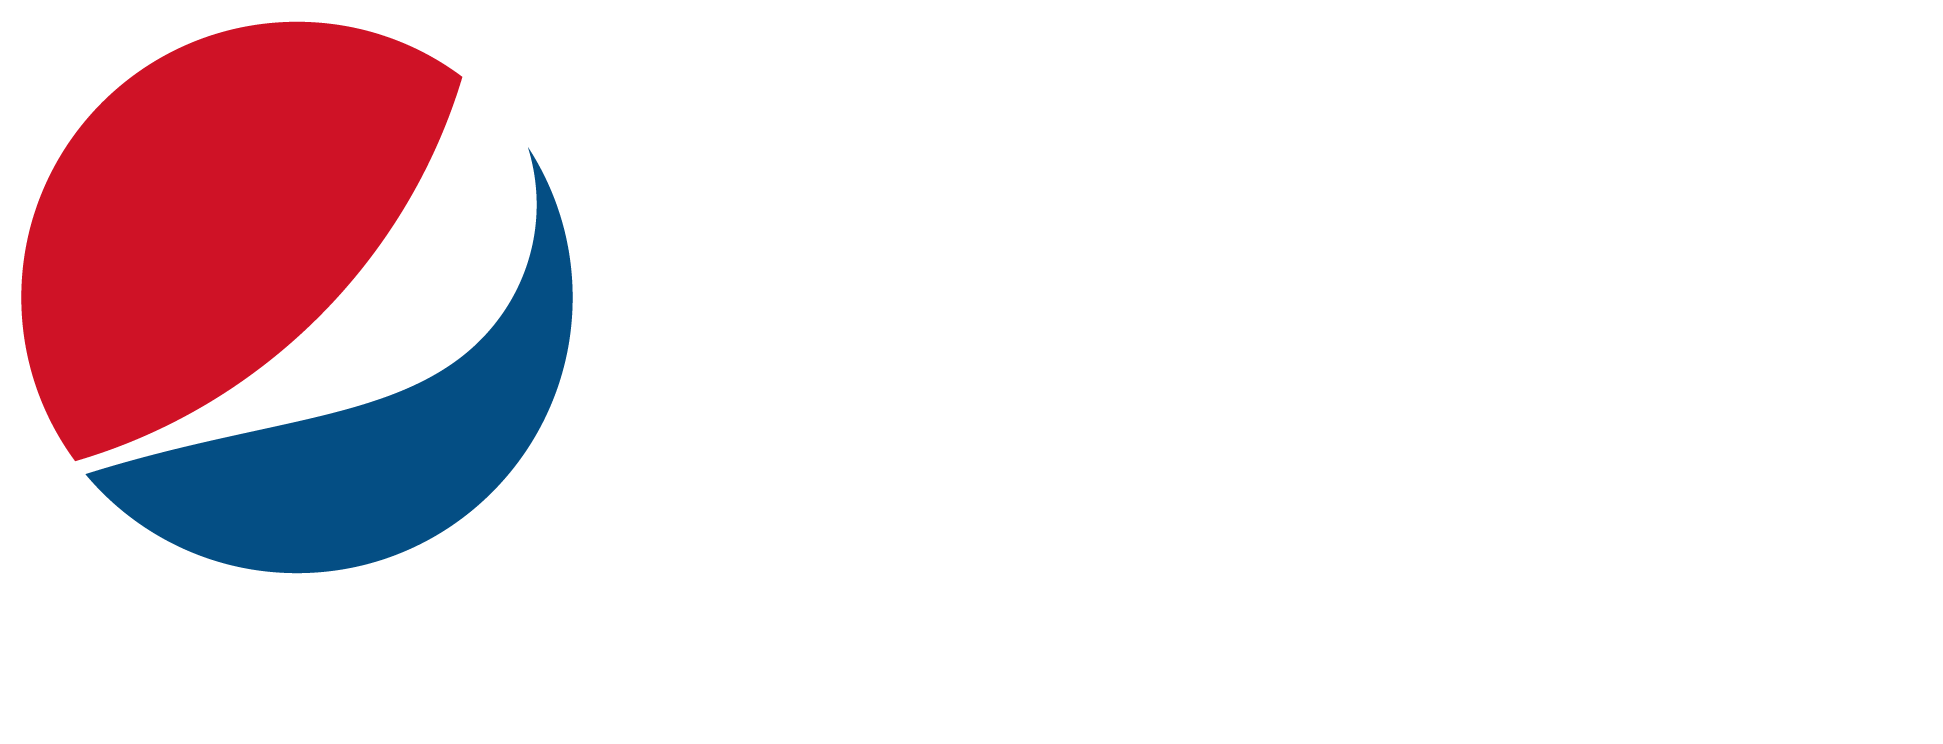 Pepsi Zéro Sucres